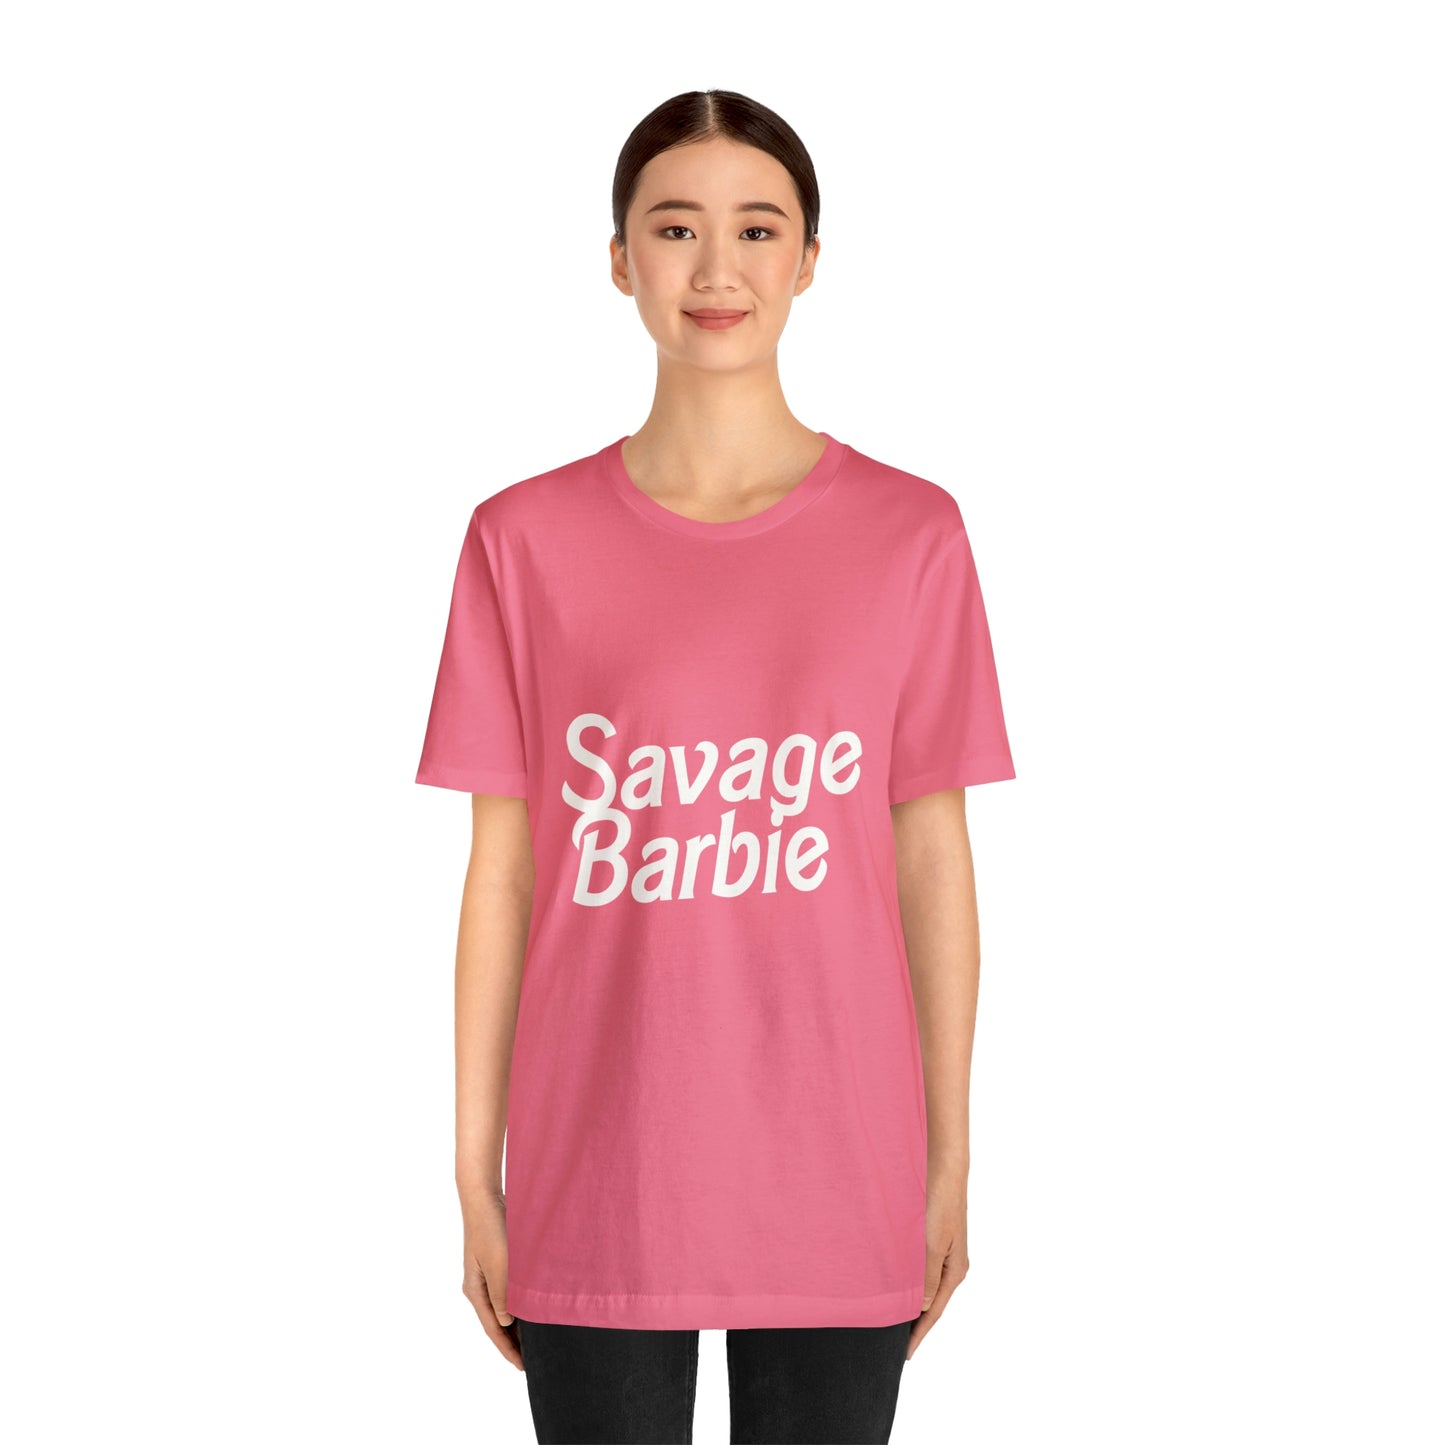 Savage Barbie